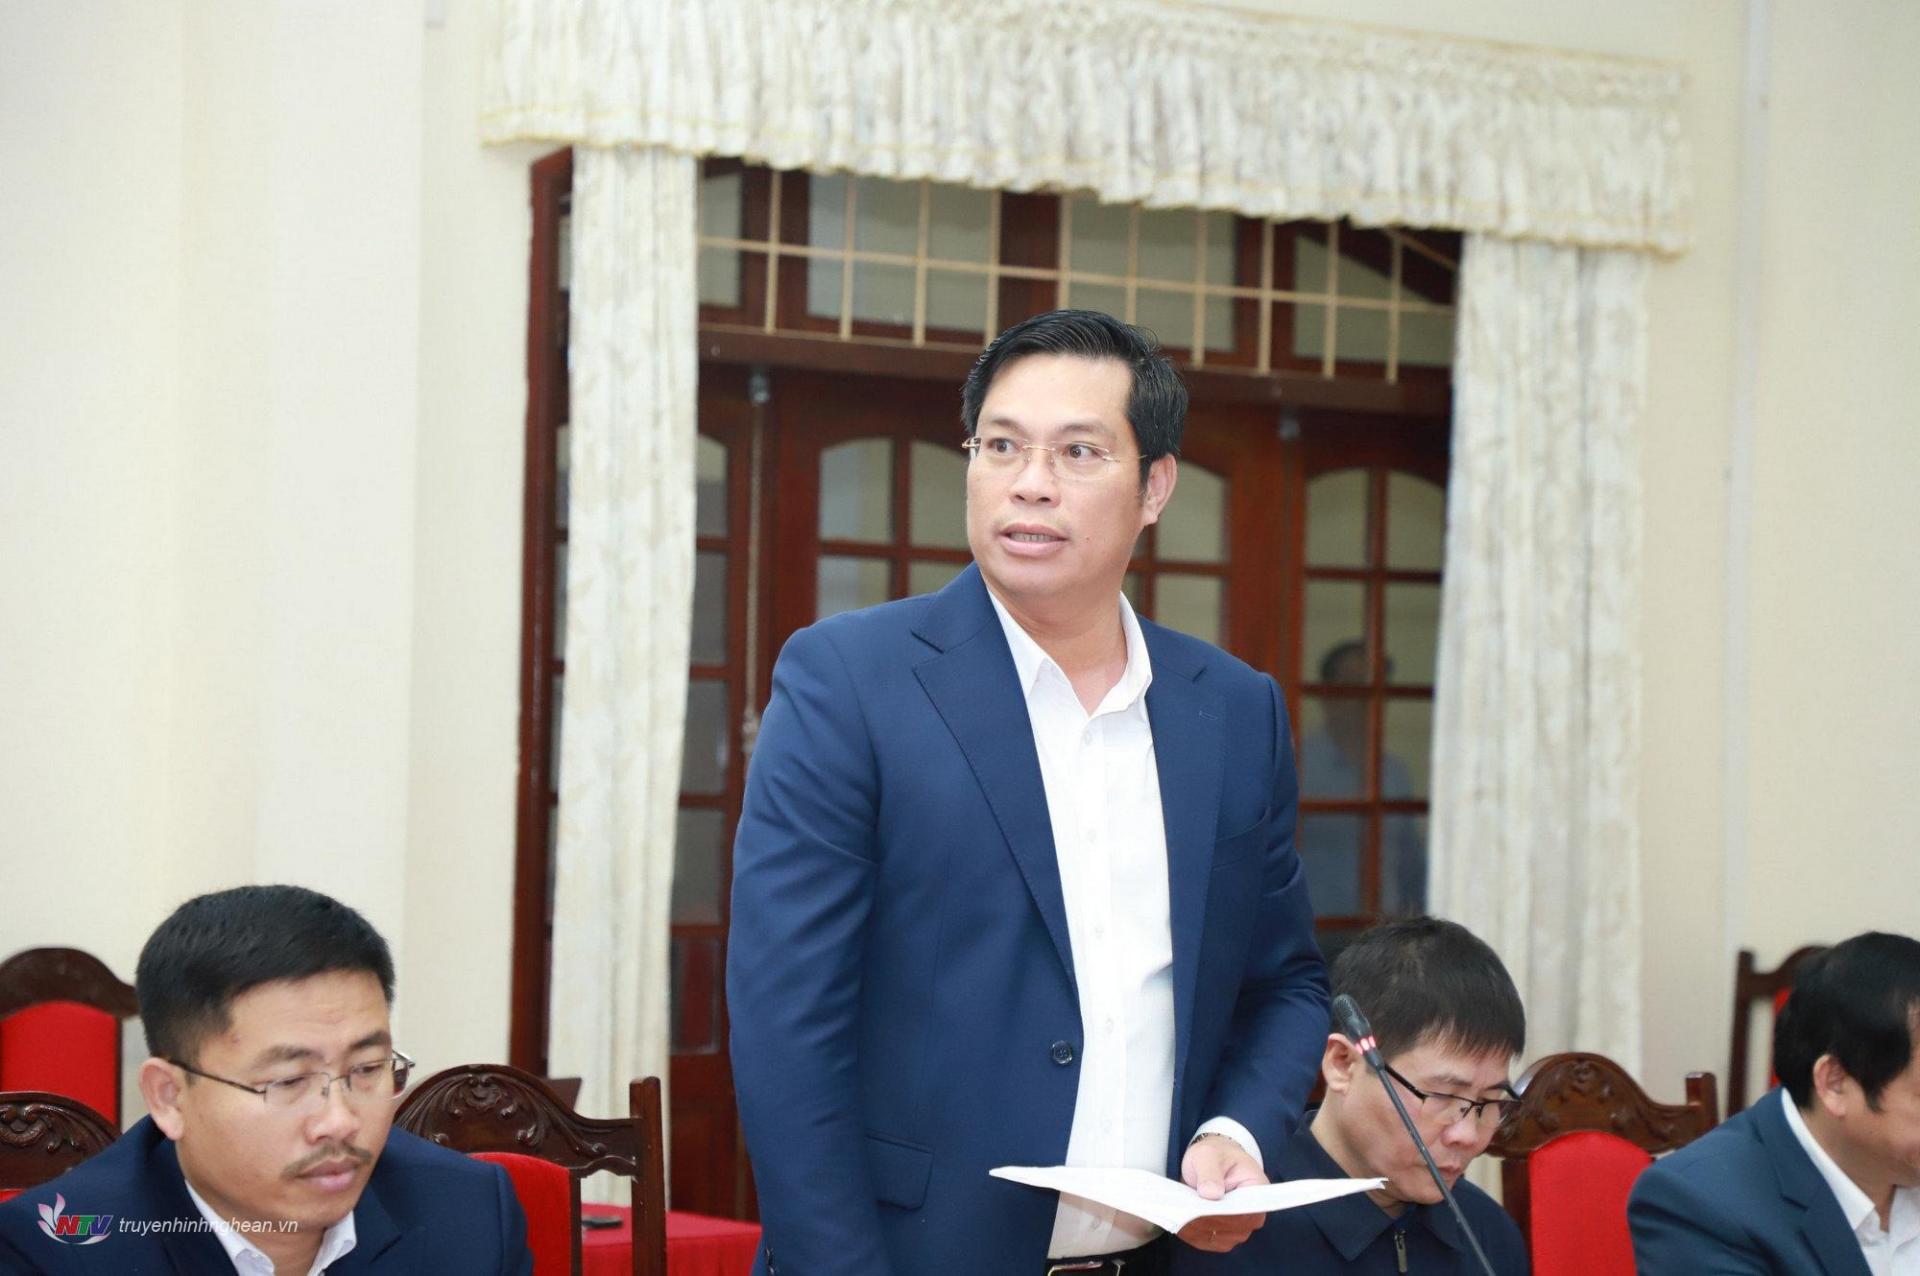 Đồng chí Bùi Duy Đông - Ủy viên Ban Chấp hành Đảng bộ tỉnh, Bí thư Huyện ủy Đô Lương trình bày Tờ trình báo cáo Ban Thường vụ Tỉnh ủy. 